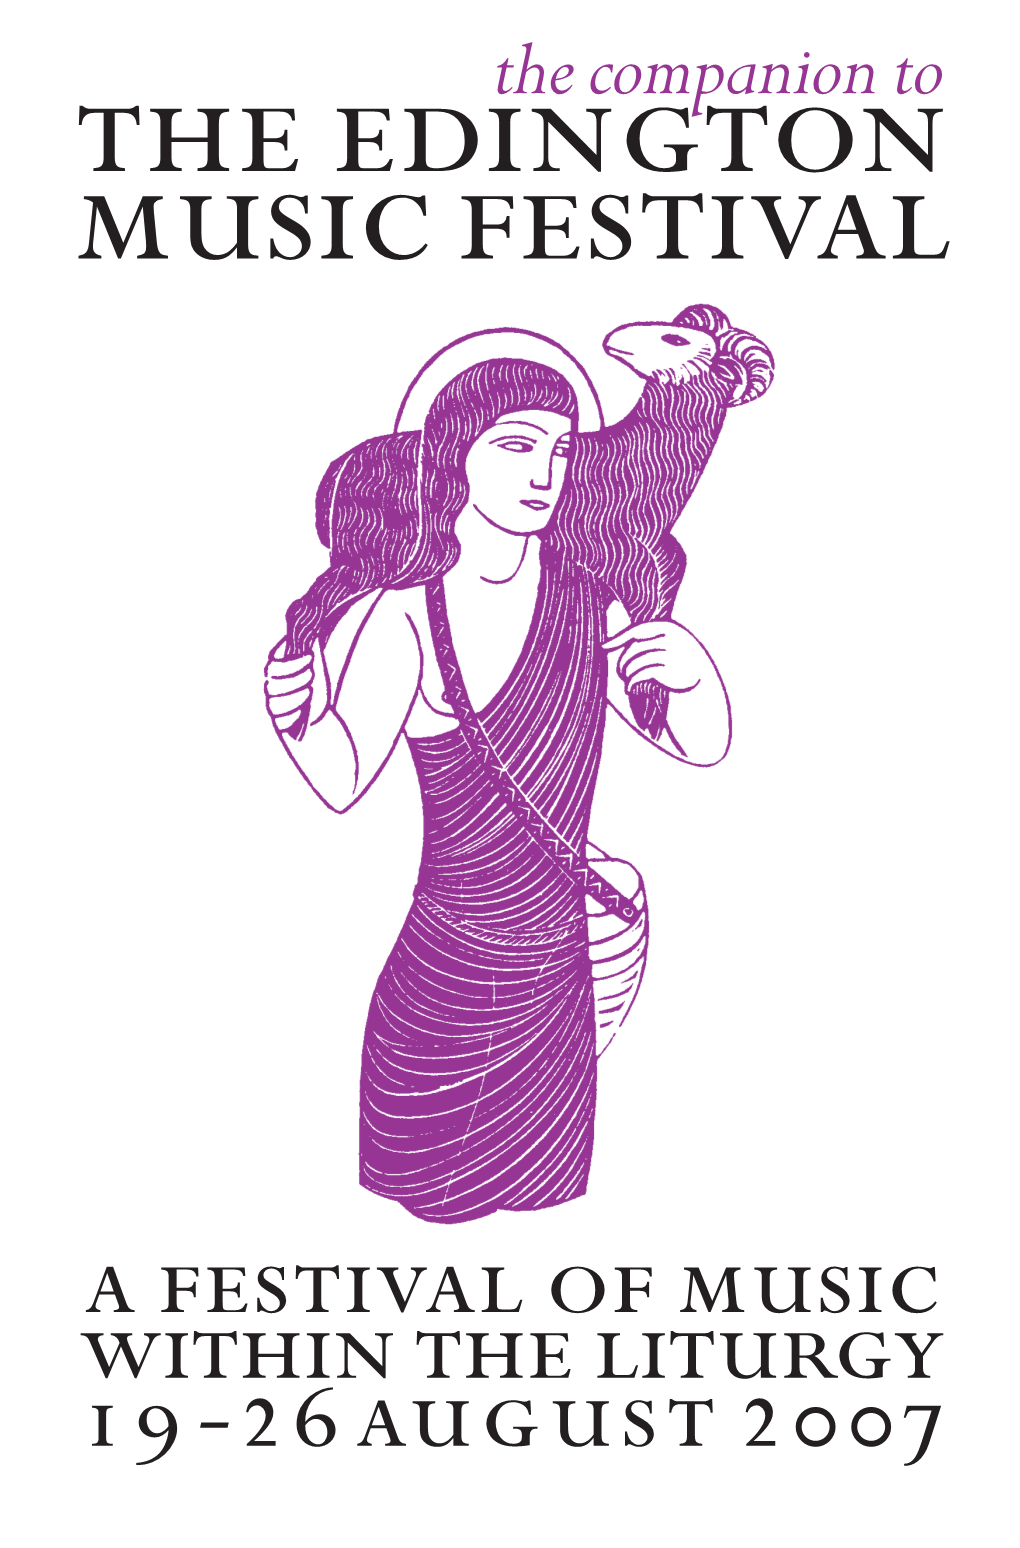 The Edington Music Festival